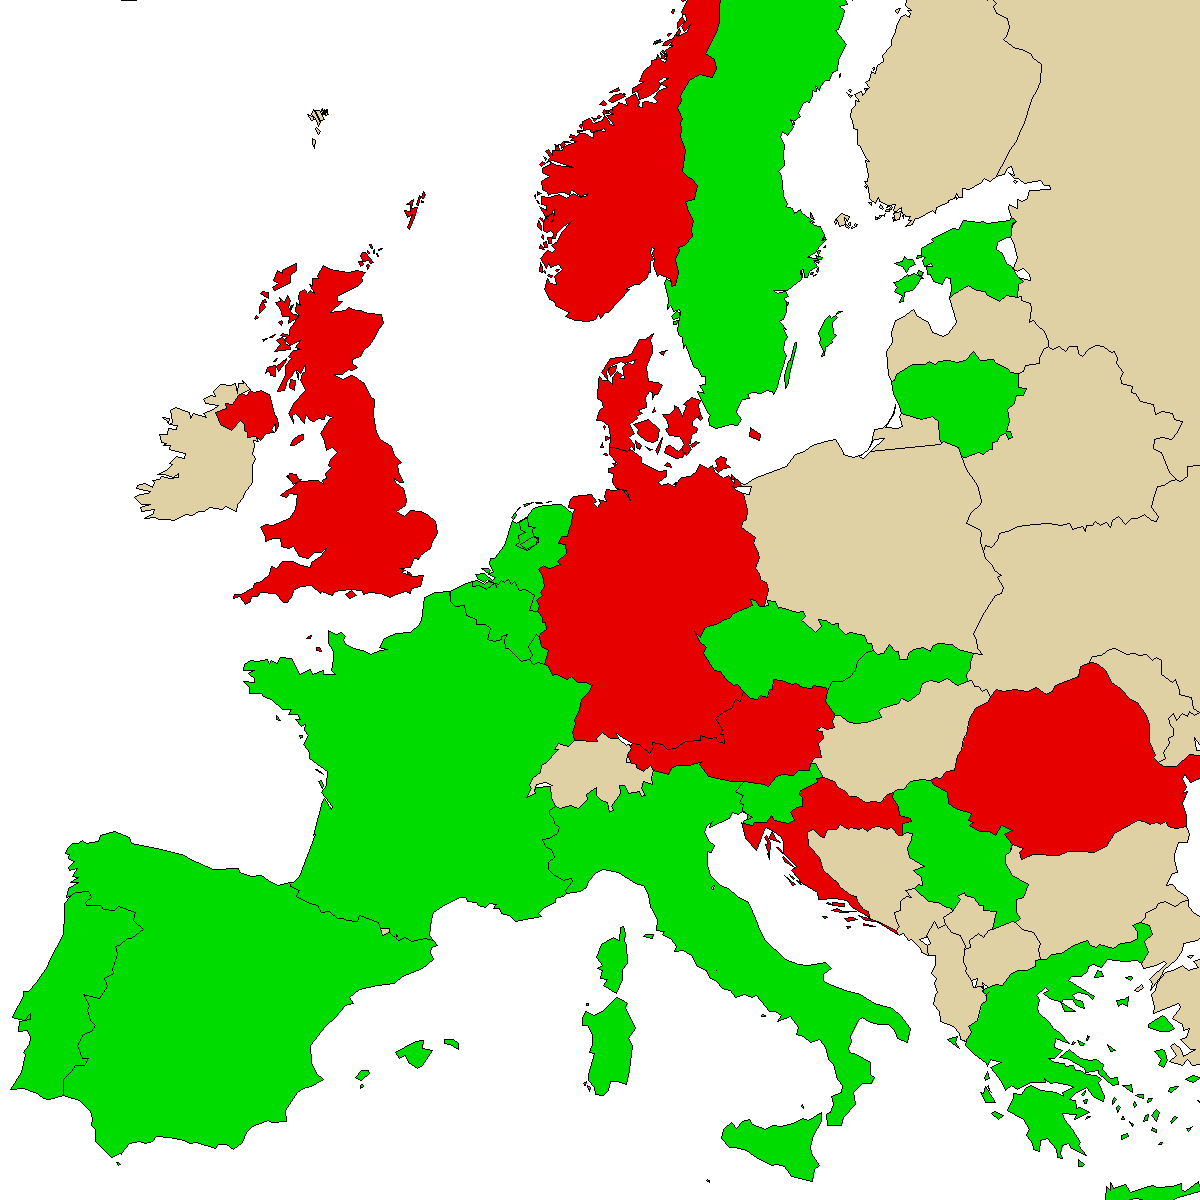 carte d'information légale pour notre produit 3MMA, vert sont des pays sans interdiction, rouge avec interdiction, gris inconnu